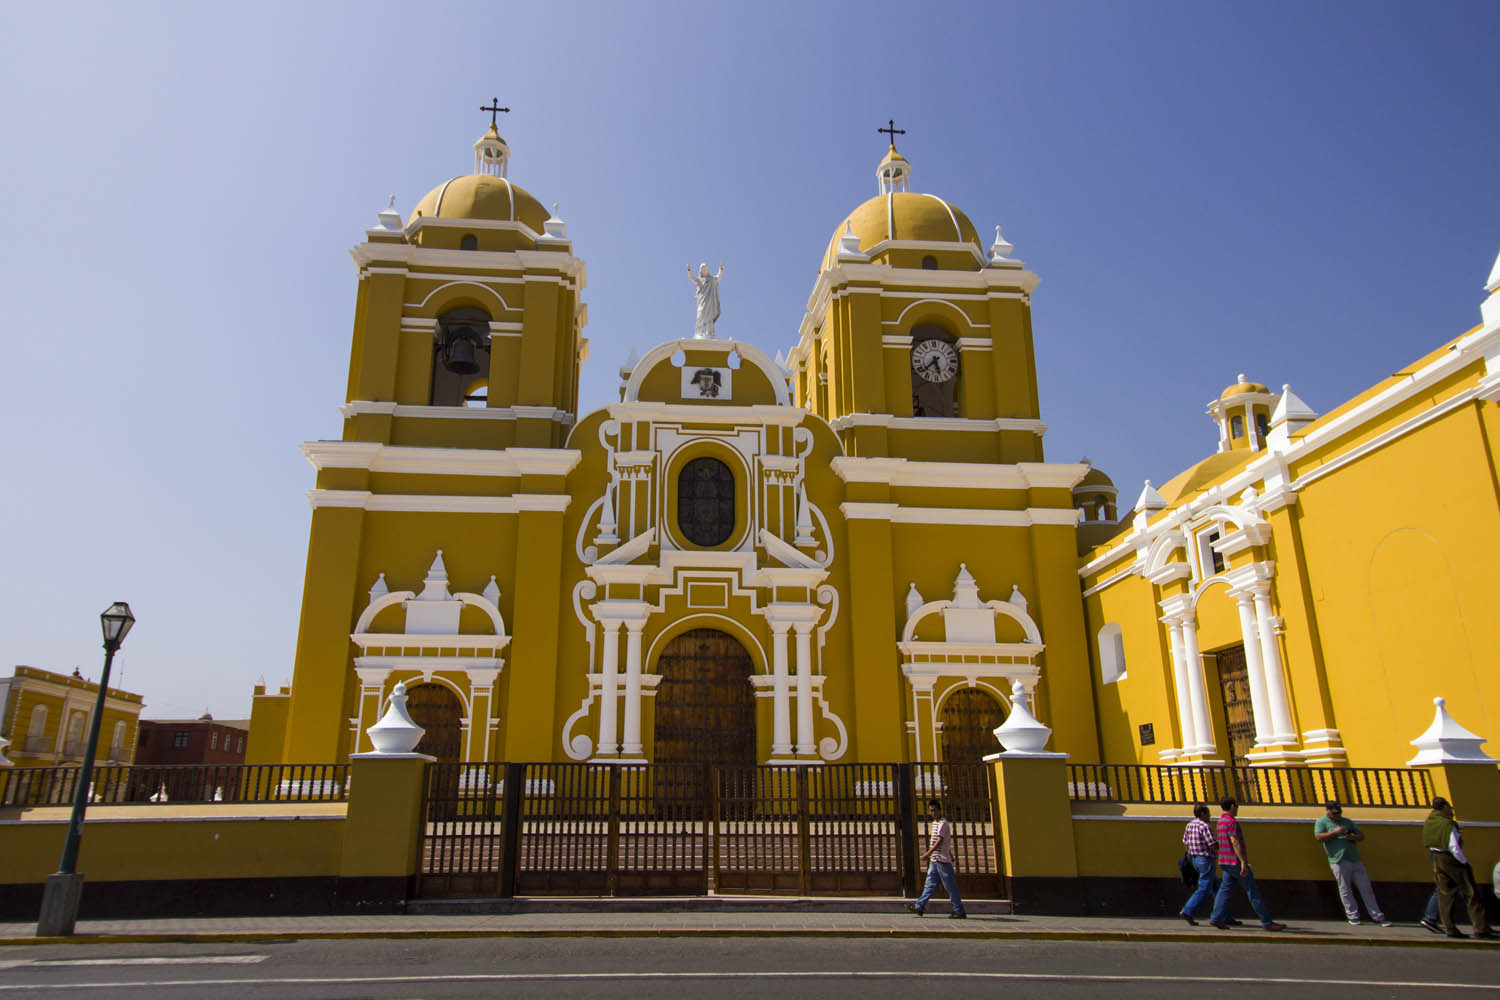 Reisdagboek #13: Trujillo in noord-Peru